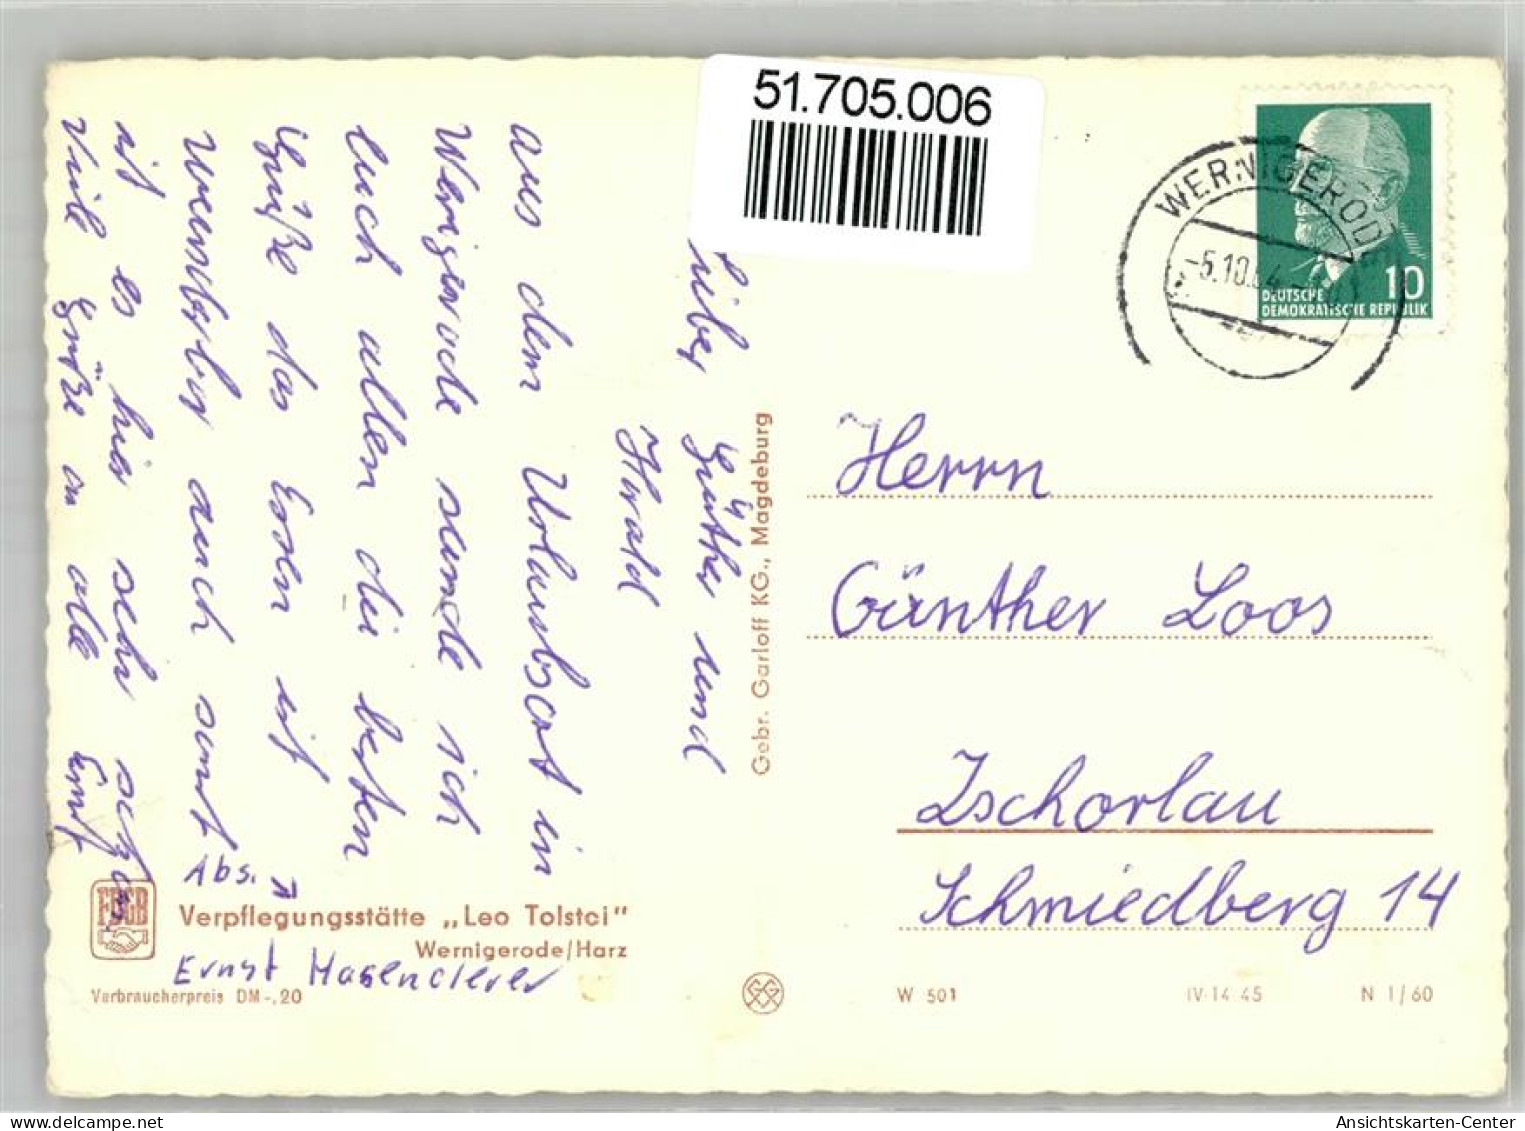 51705006 - Wernigerode - Wernigerode